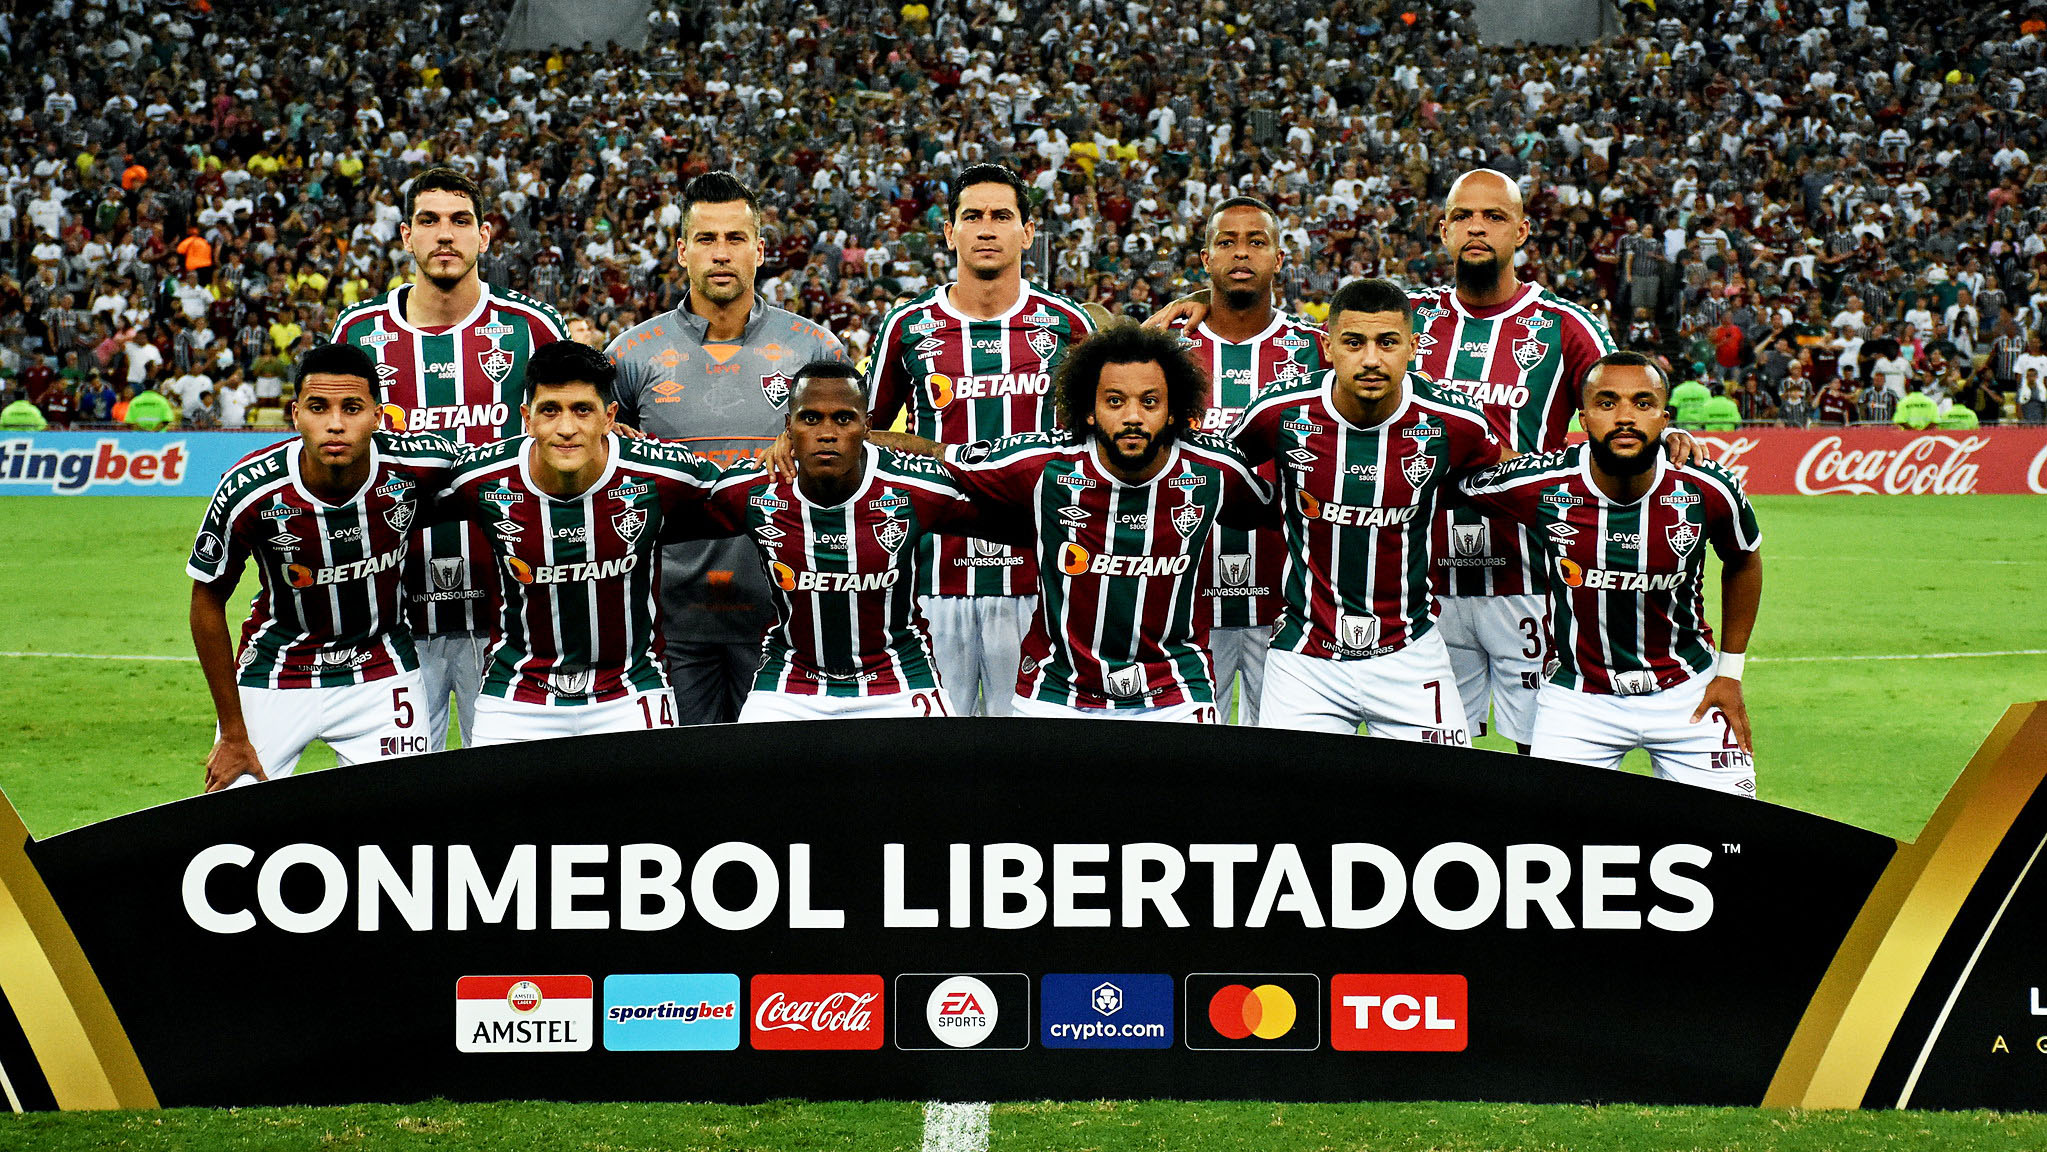 Análise pós-jogo: Flamengo 2x1 Sporting - Encontrou o caminho para